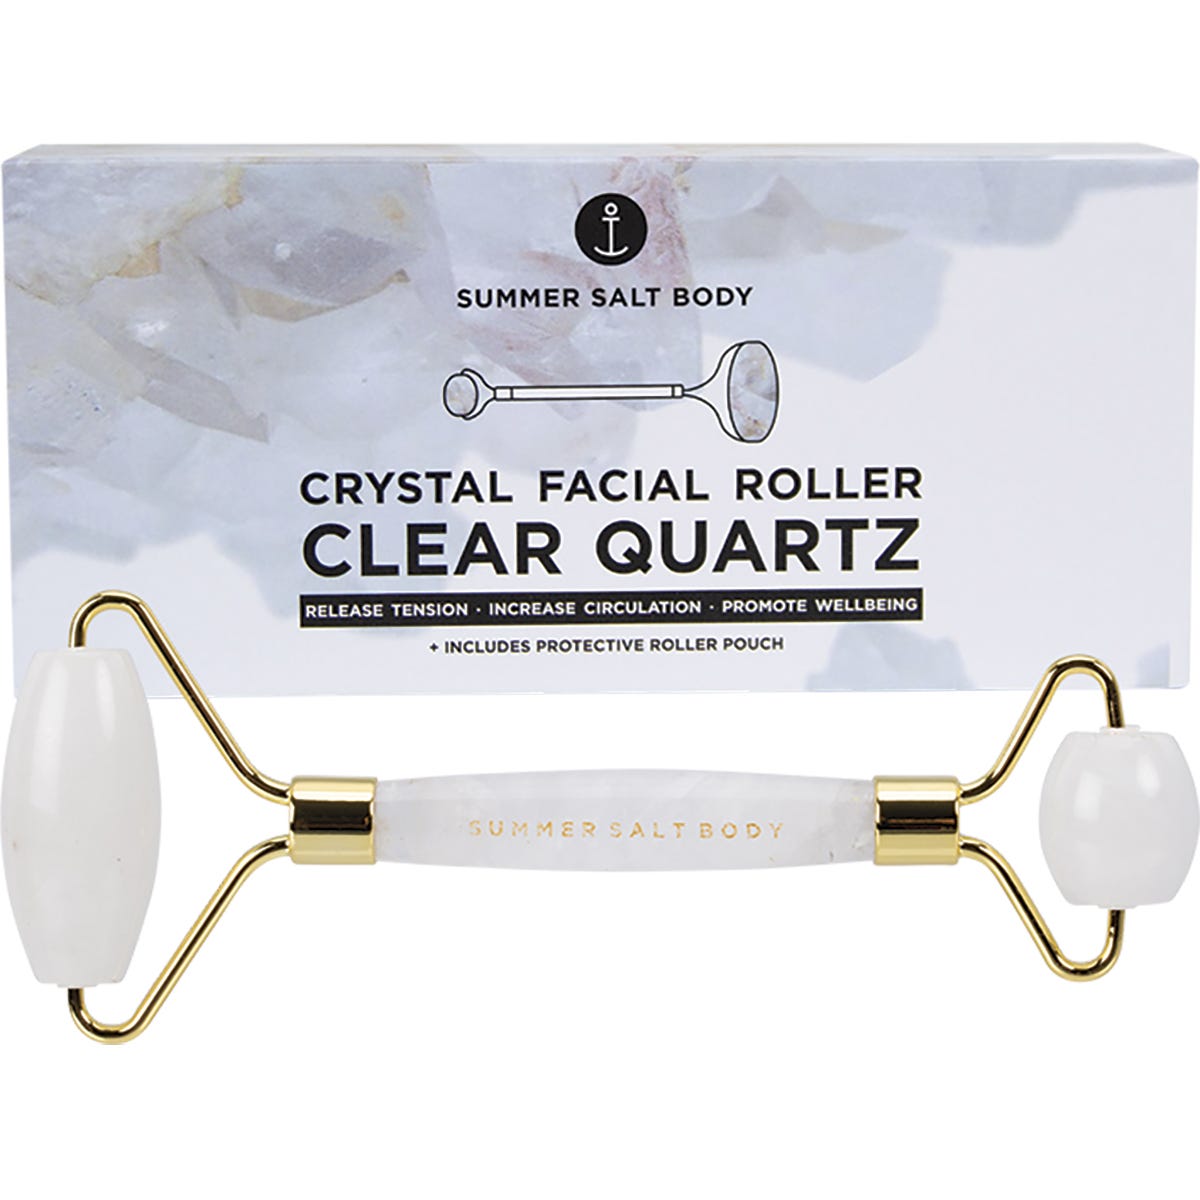 Crystal Facial Roller Clear Quartz